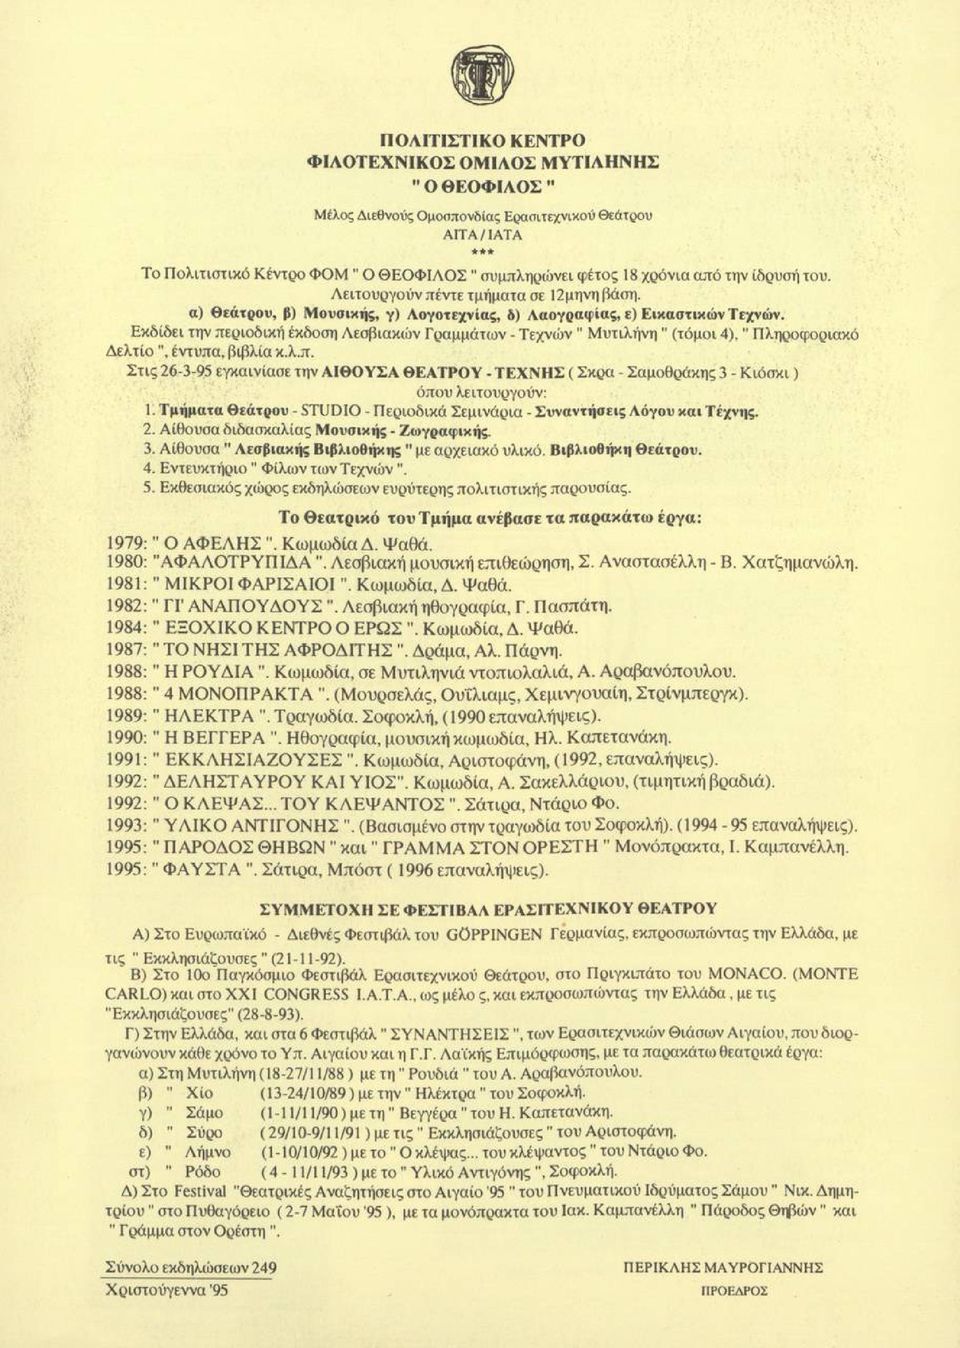 Εκδίδει την περιοδική έκδοση Λεσβιακών Γραμμάτων - Τεχνών" Μυτιλήνη" (τόμοι 4)." Πληροφοριακό Δελτίο", έντυπα, βιβλία κ.λ.π. Στις 26-3-95 εγκαινίασε την ΑΙΘΟΥΣΑ ΘΕΑΤΡΟΥ - ΤΕΧΝΗΣ ( Σκρα - Σαμοθράκης 3 - Κιόσκι) όπου λειτουργούν: 1.